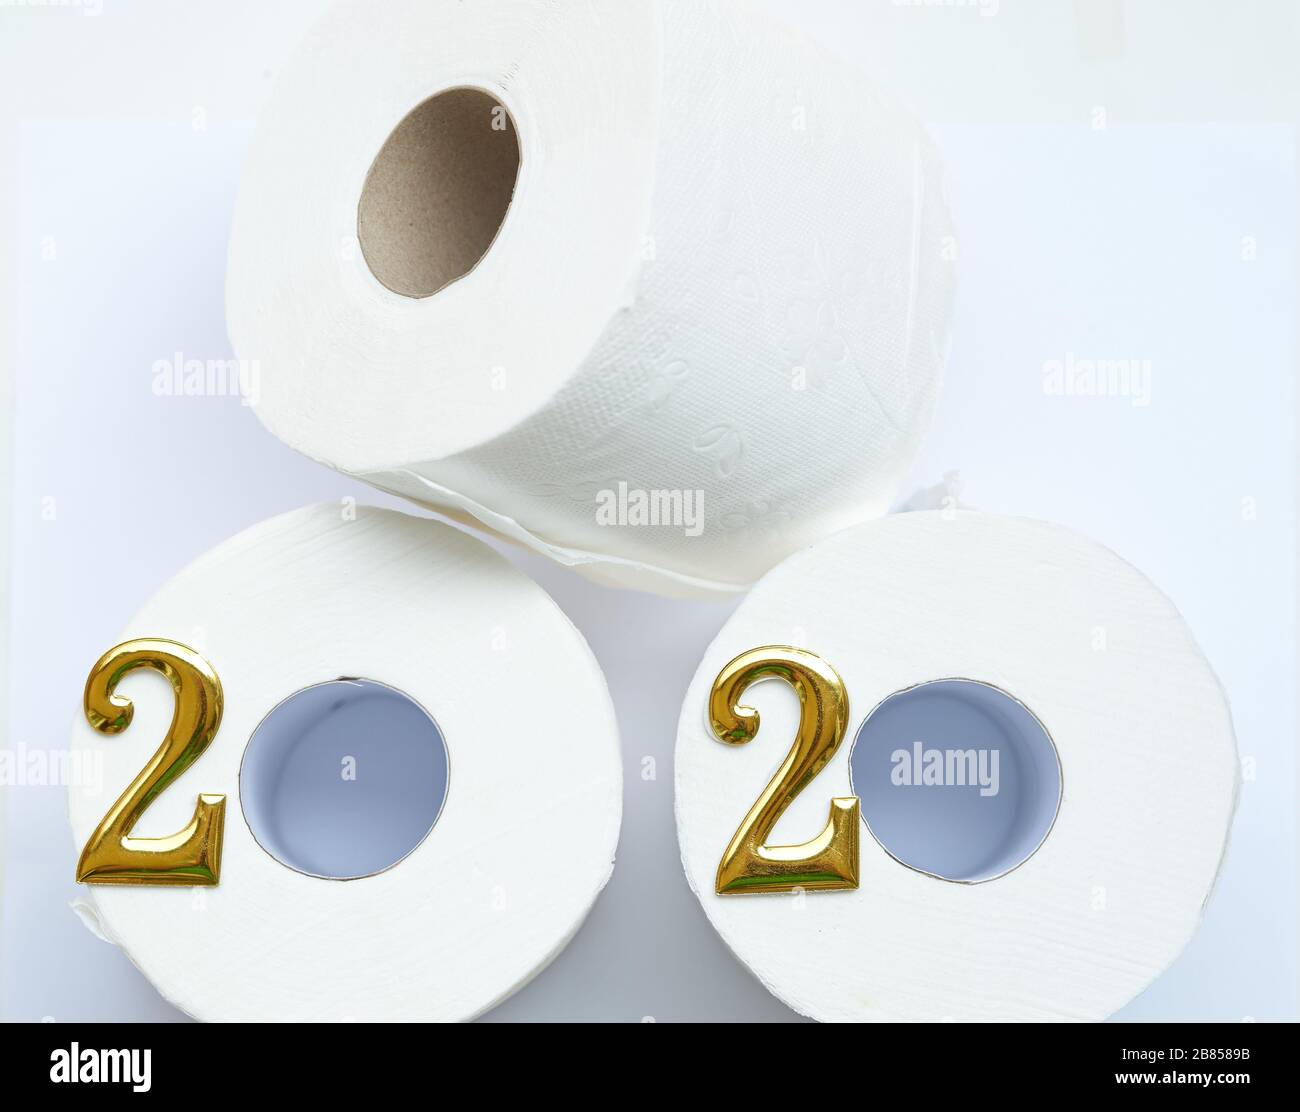 Rotoli di carta igienica, disposti per raffigurare l'anno 2020. Foto Stock